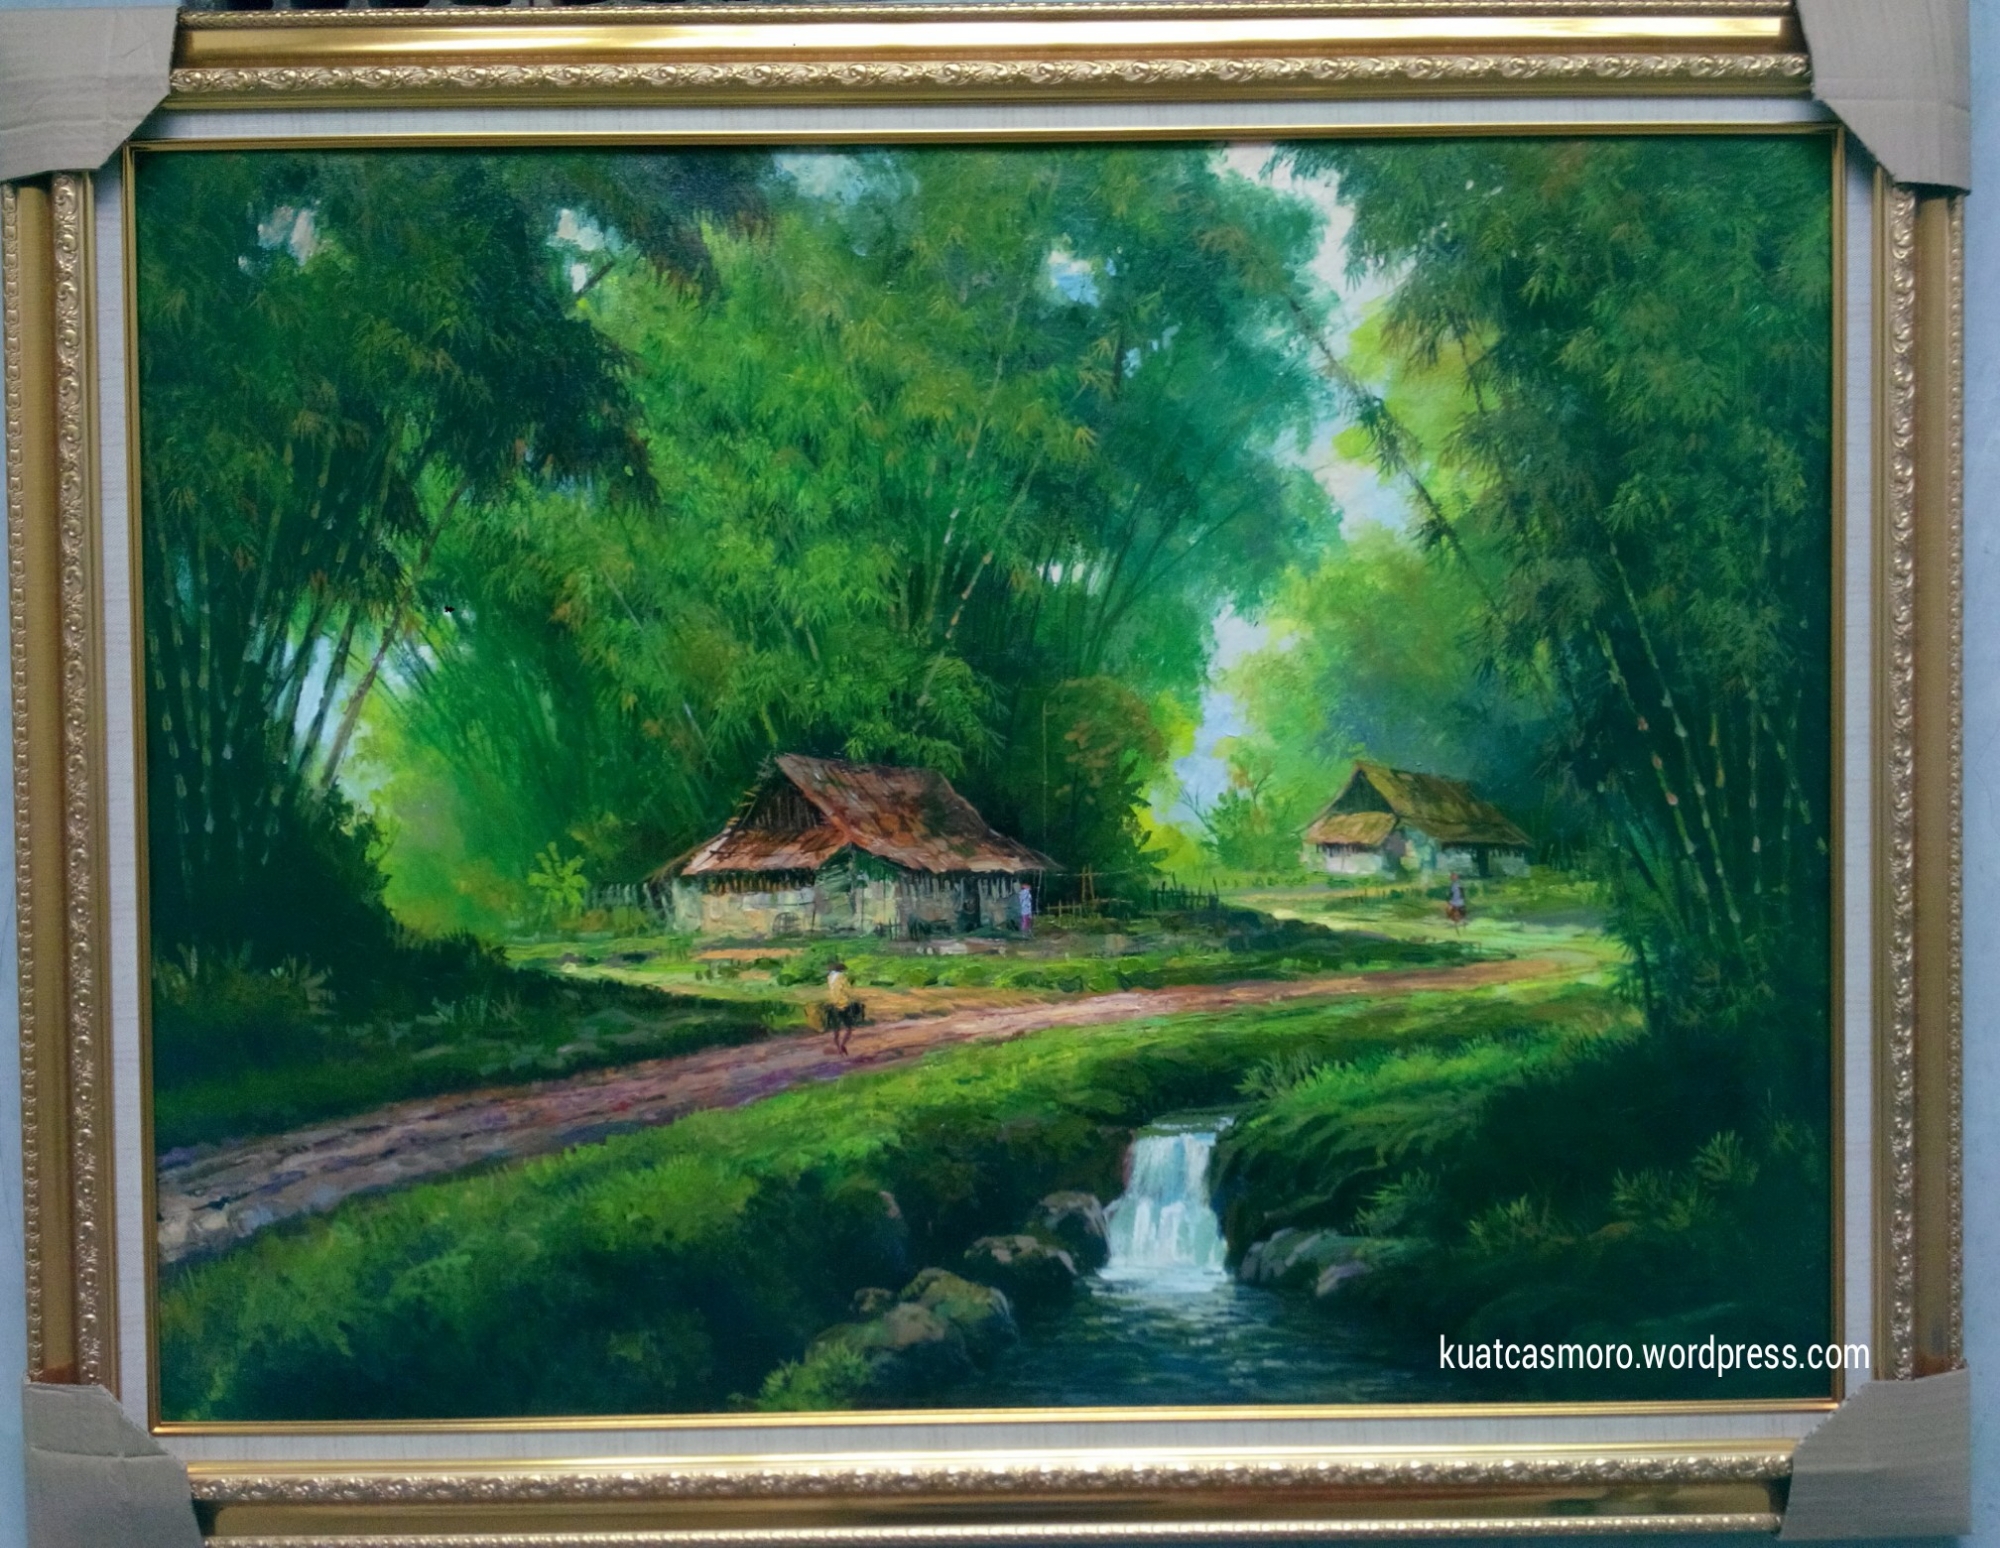 Lukisan Pemandangan Hutan Bambu Pelukis Kuat Casmoro